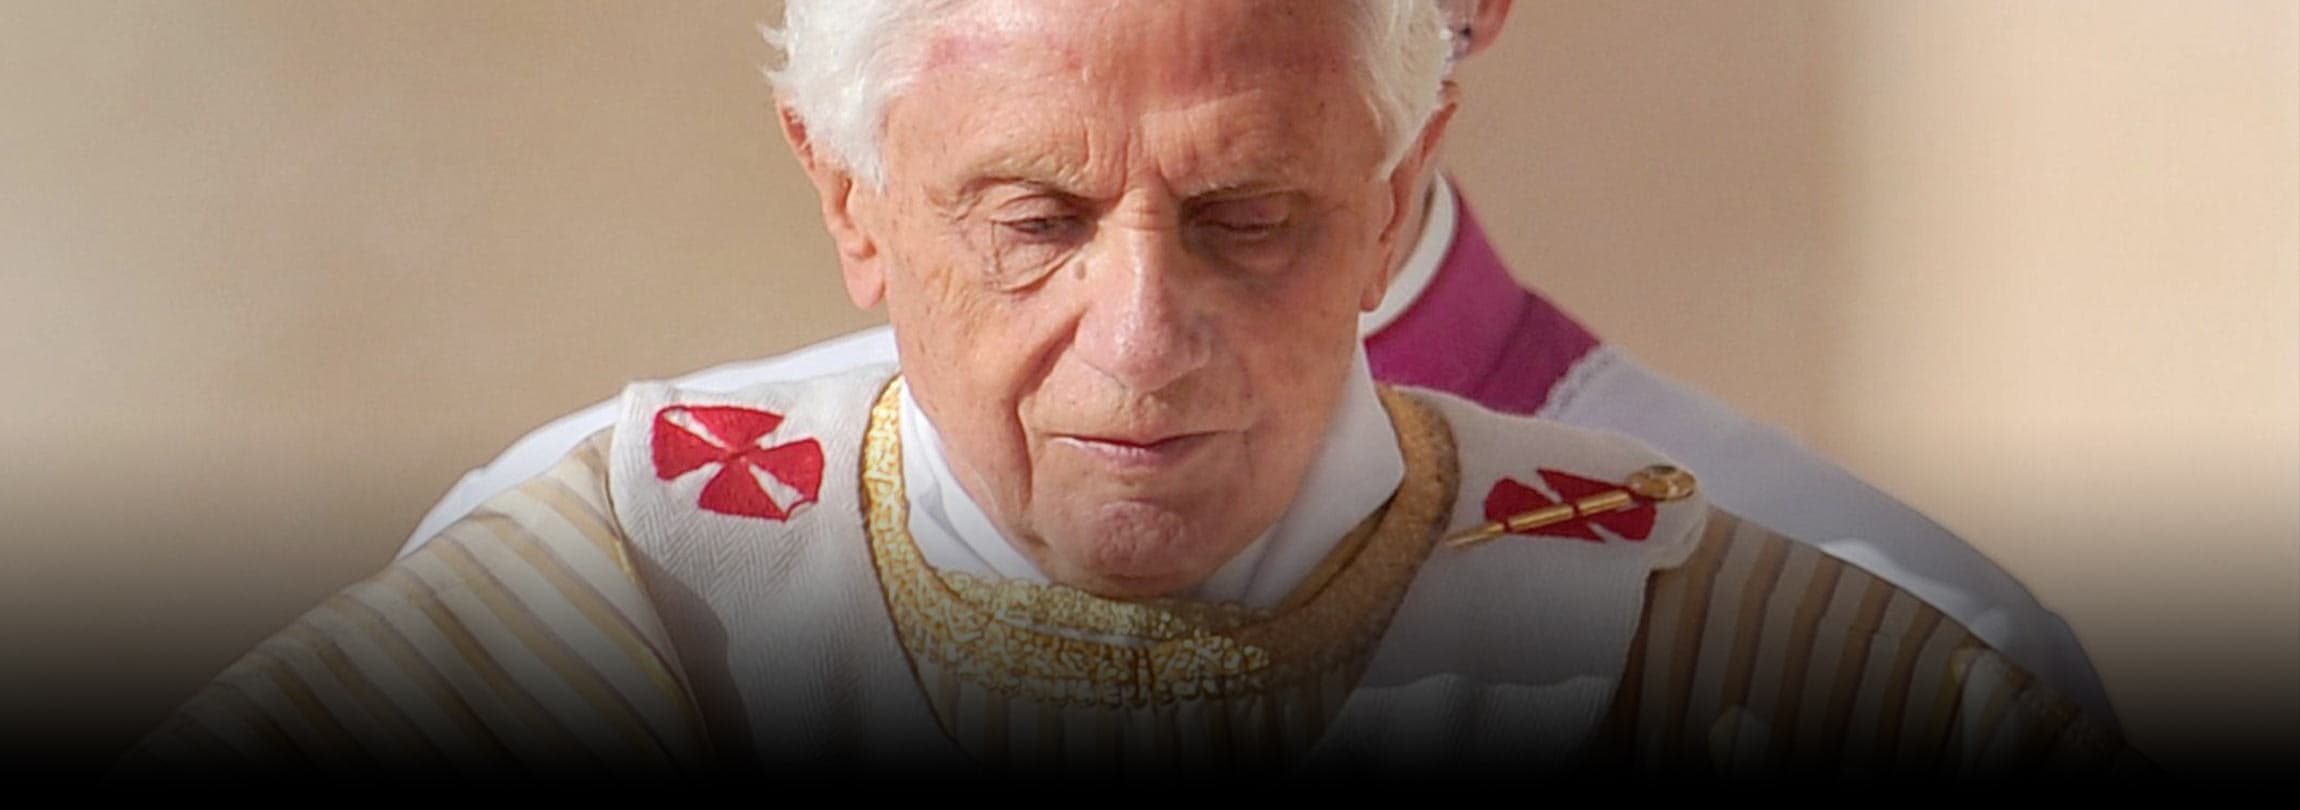 Abrir e dirigir o coração a Deus ao rezar na Liturgia da Igreja, exortou o Papa